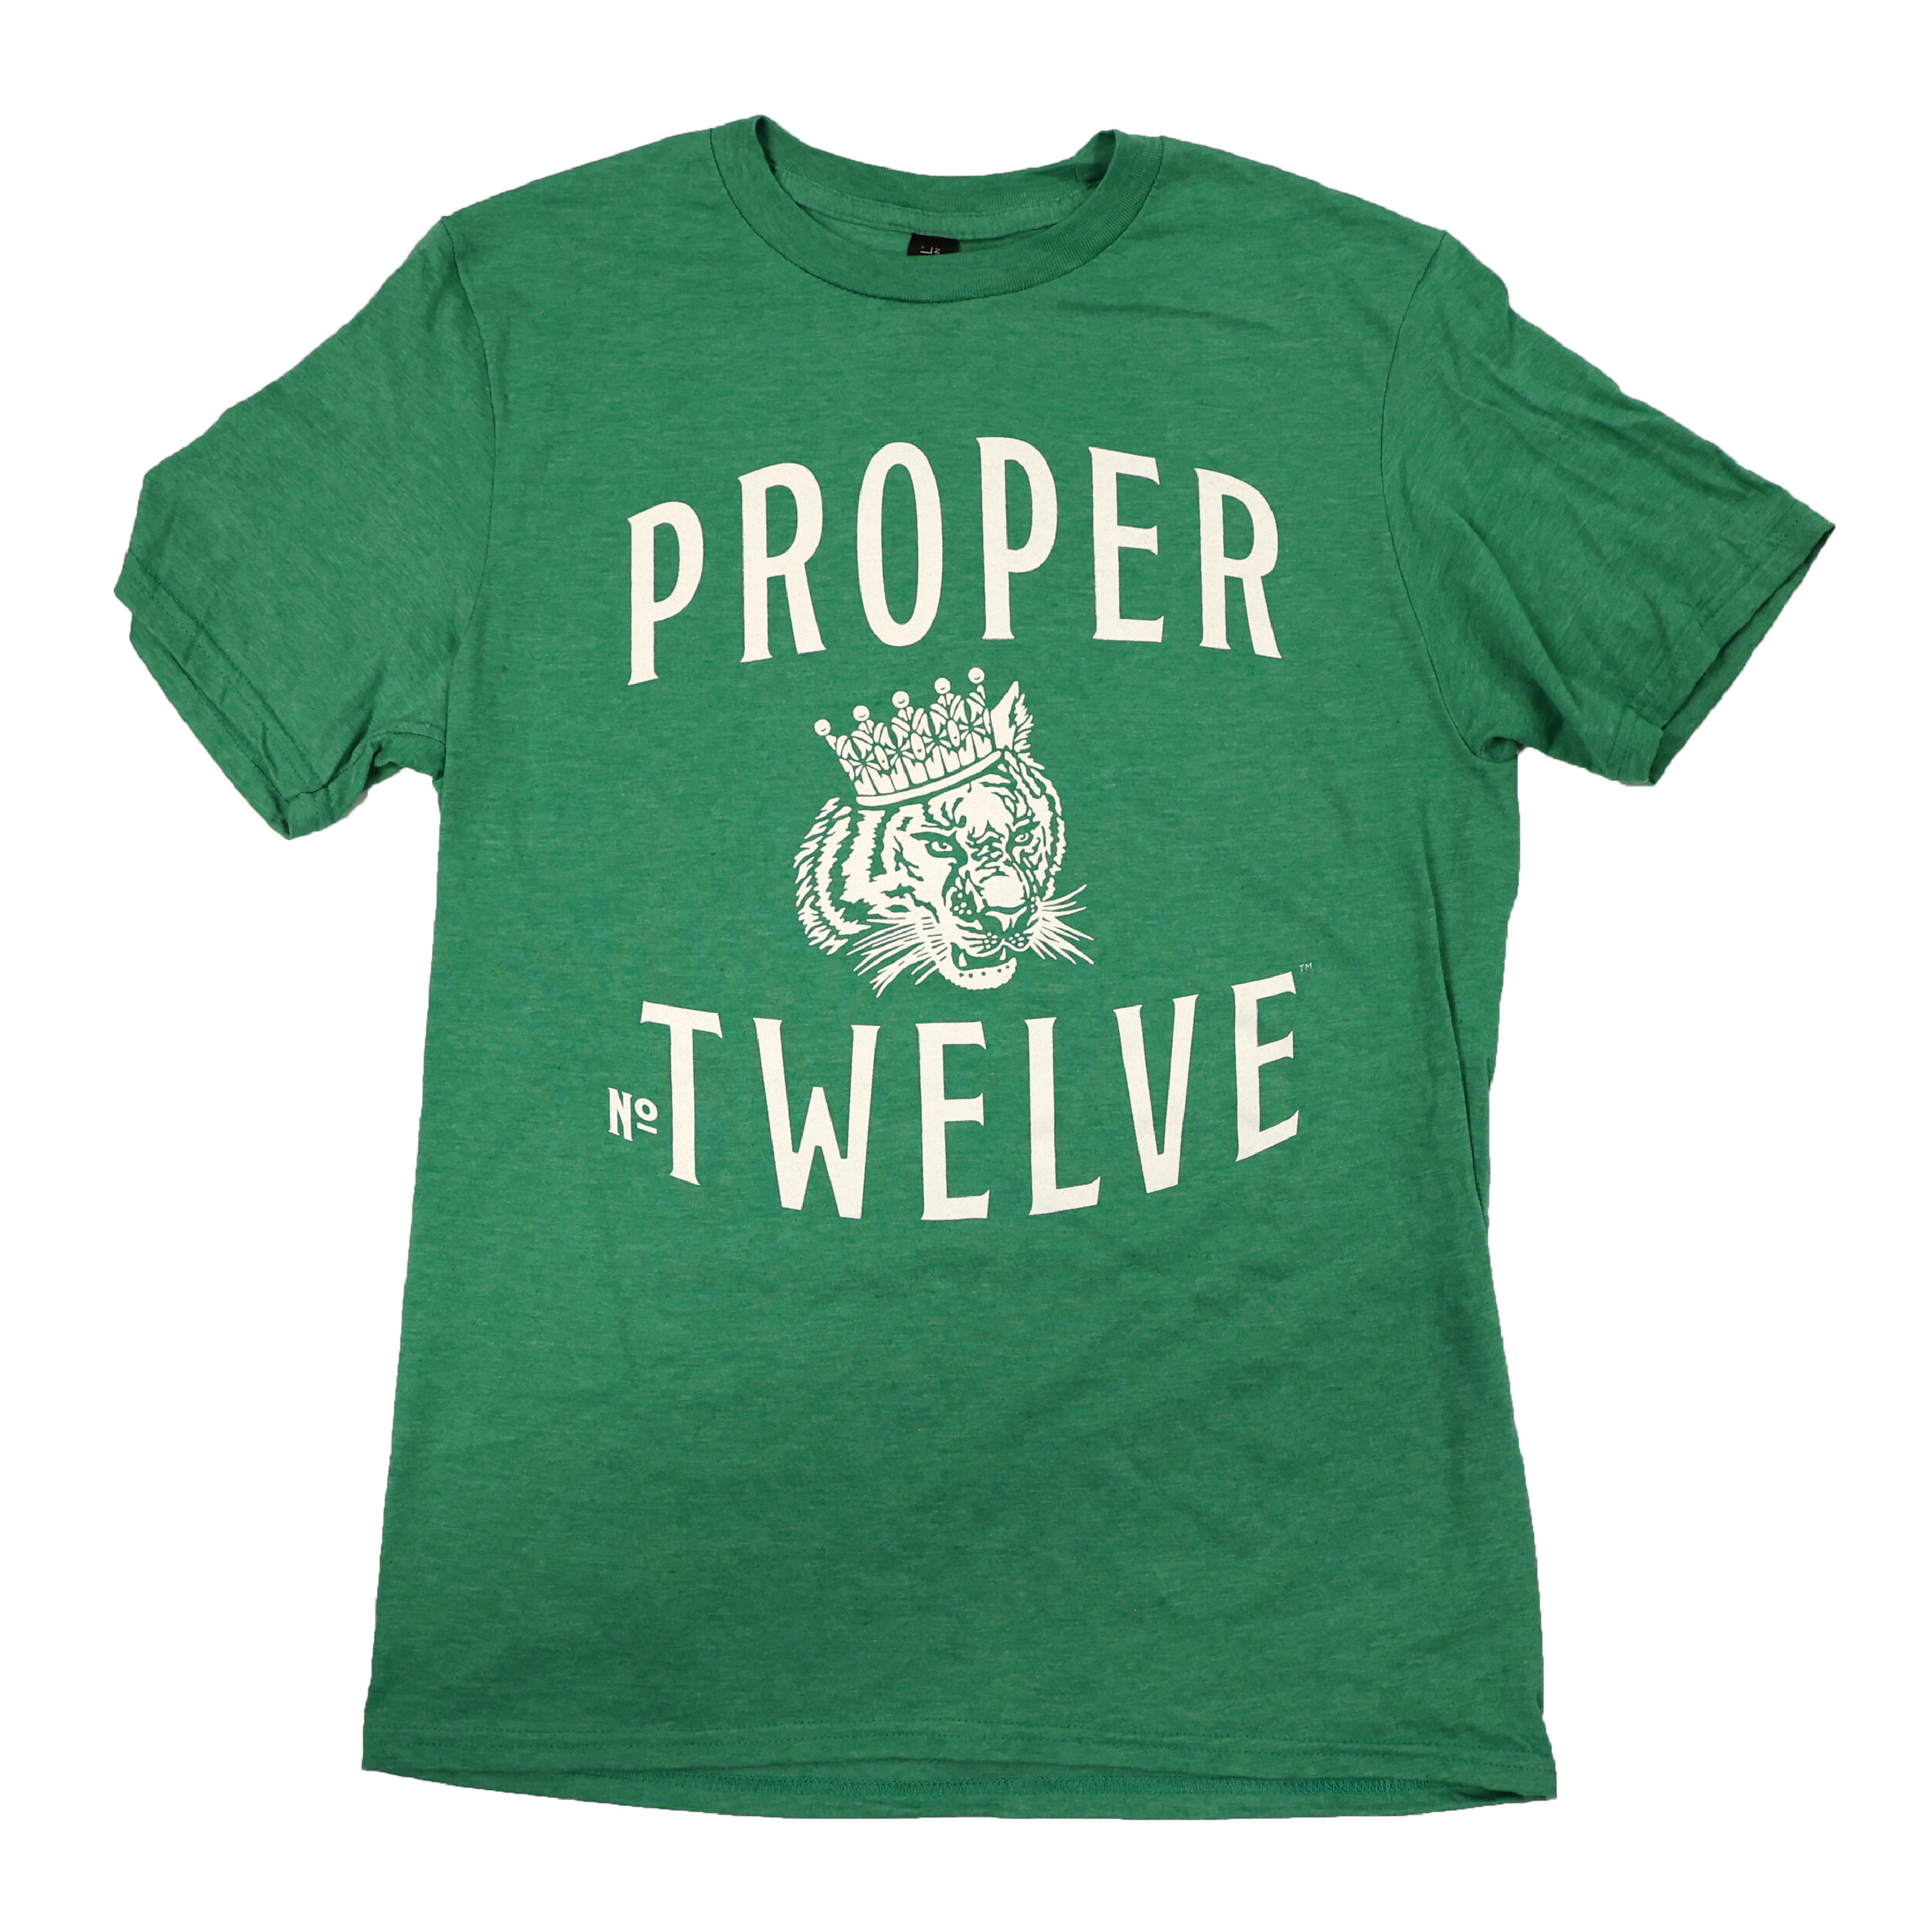 Proper No Twelve T-Shirt-01.jpg